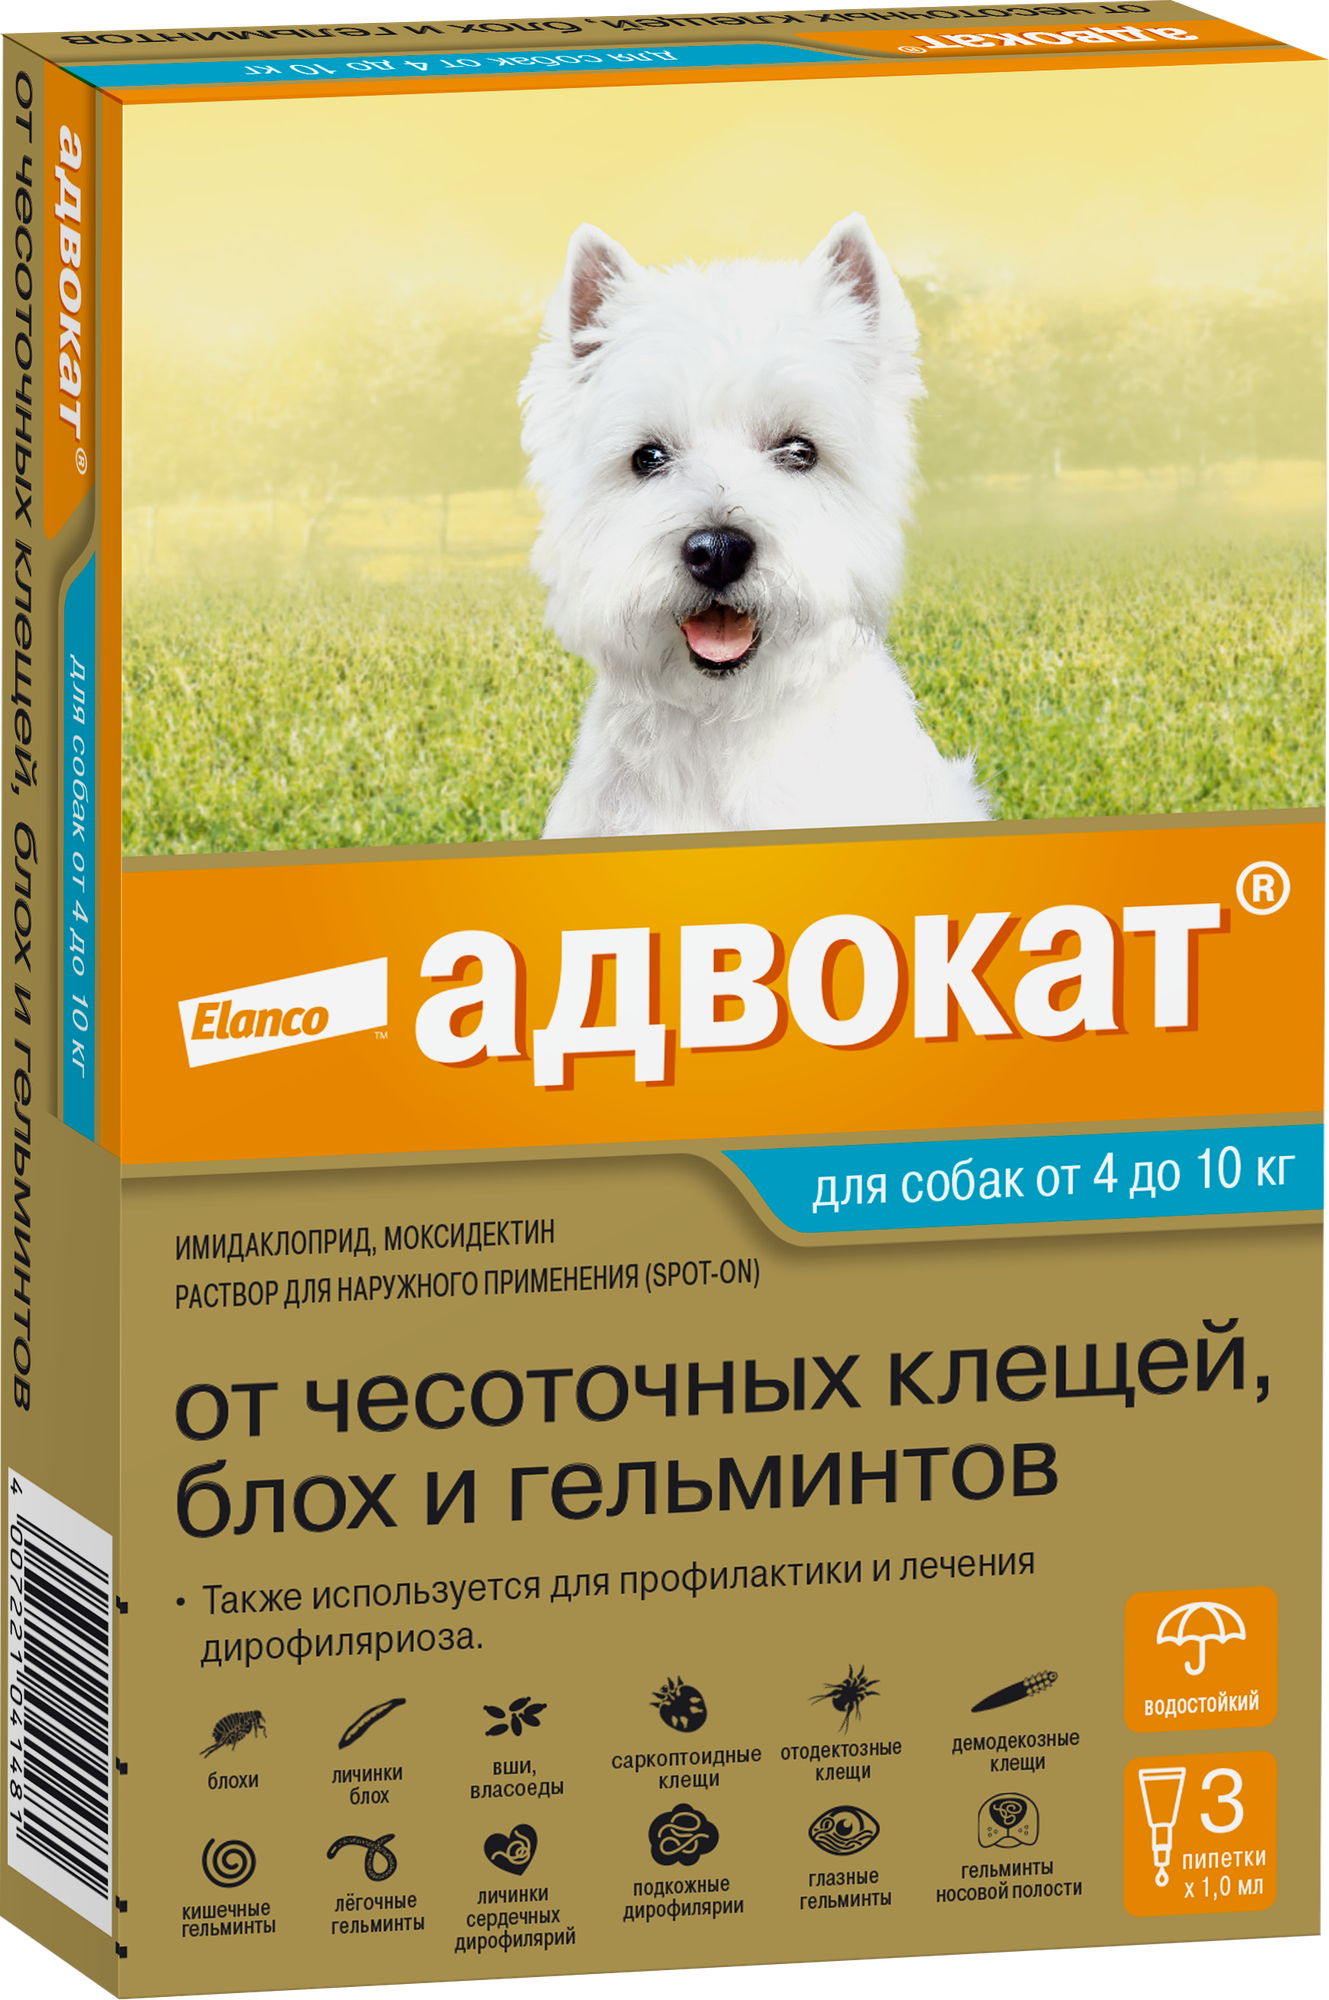 Elanco Капли от чесоточных клещей блох и гельминтов для собак от 4 до 10 кг